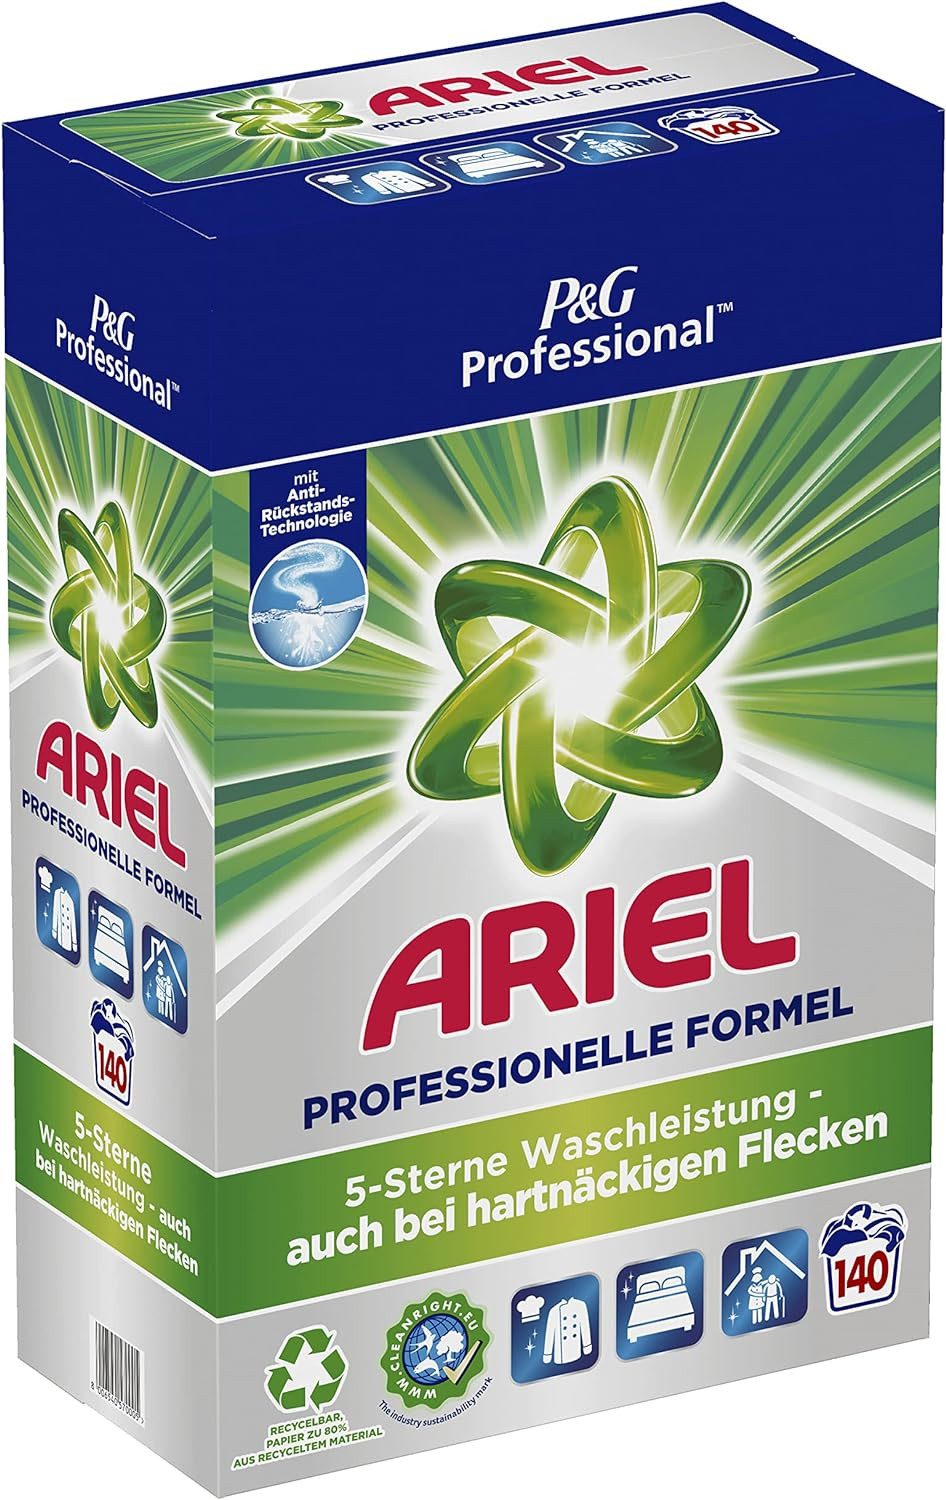 ARIEL Professional Vollwaschmittel Pulver - 9,00 kg – 140 Waschladungen Vollwaschmittel (ultra-konzentrierte Formel, hervorragende Fleckenentfernung)